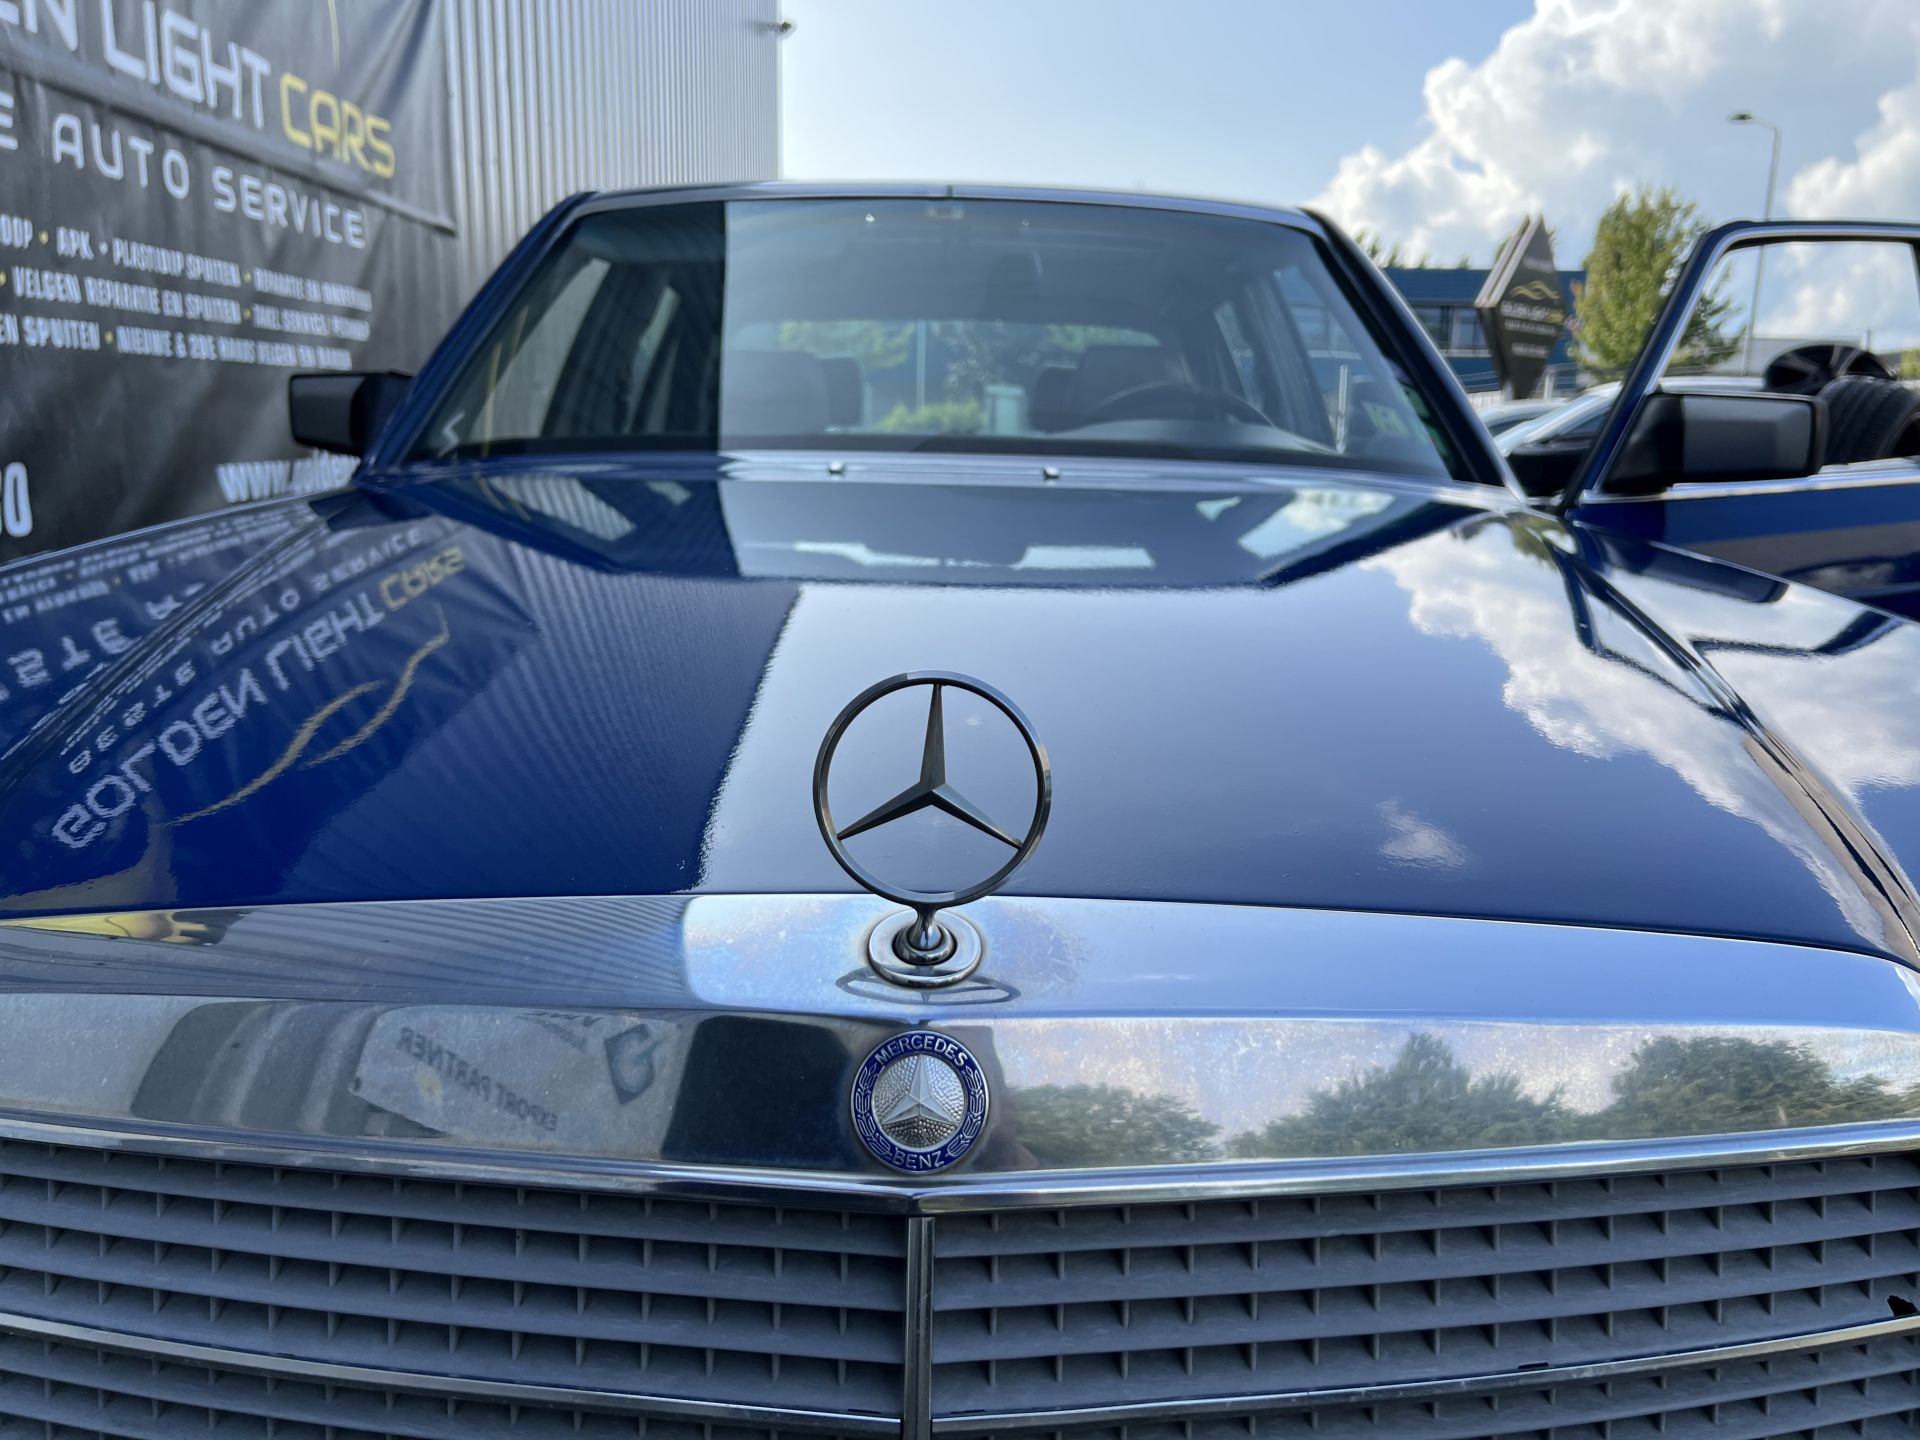 Mercedes Benz - Golden Light Cars and Wheels